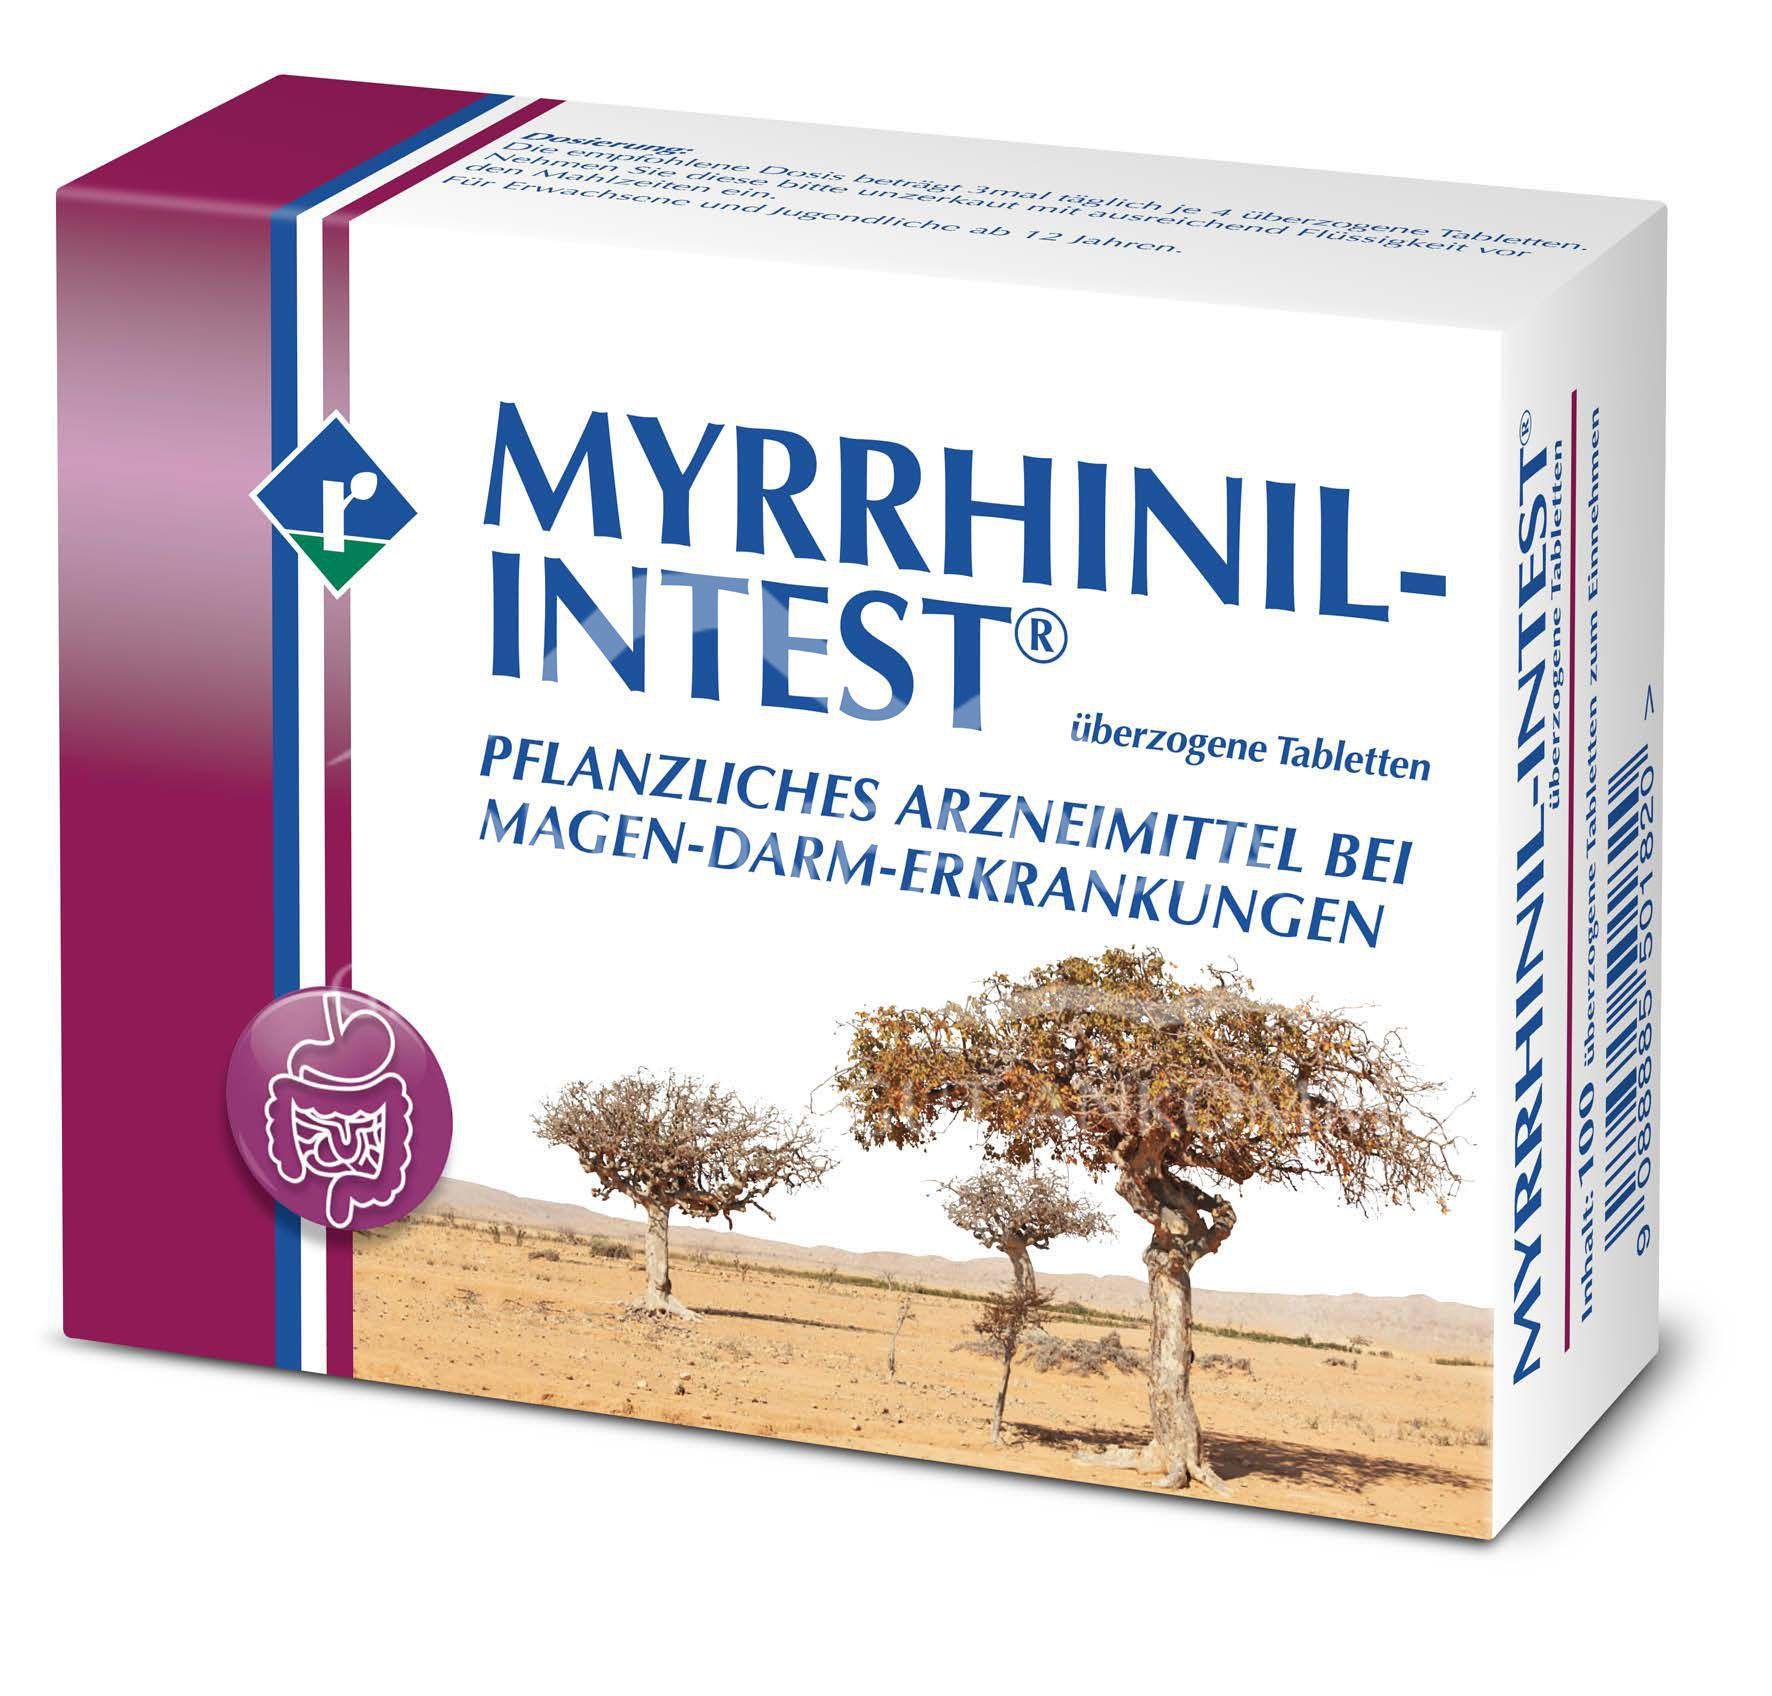 Myrrhinil-Intest® überzogene Tabletten